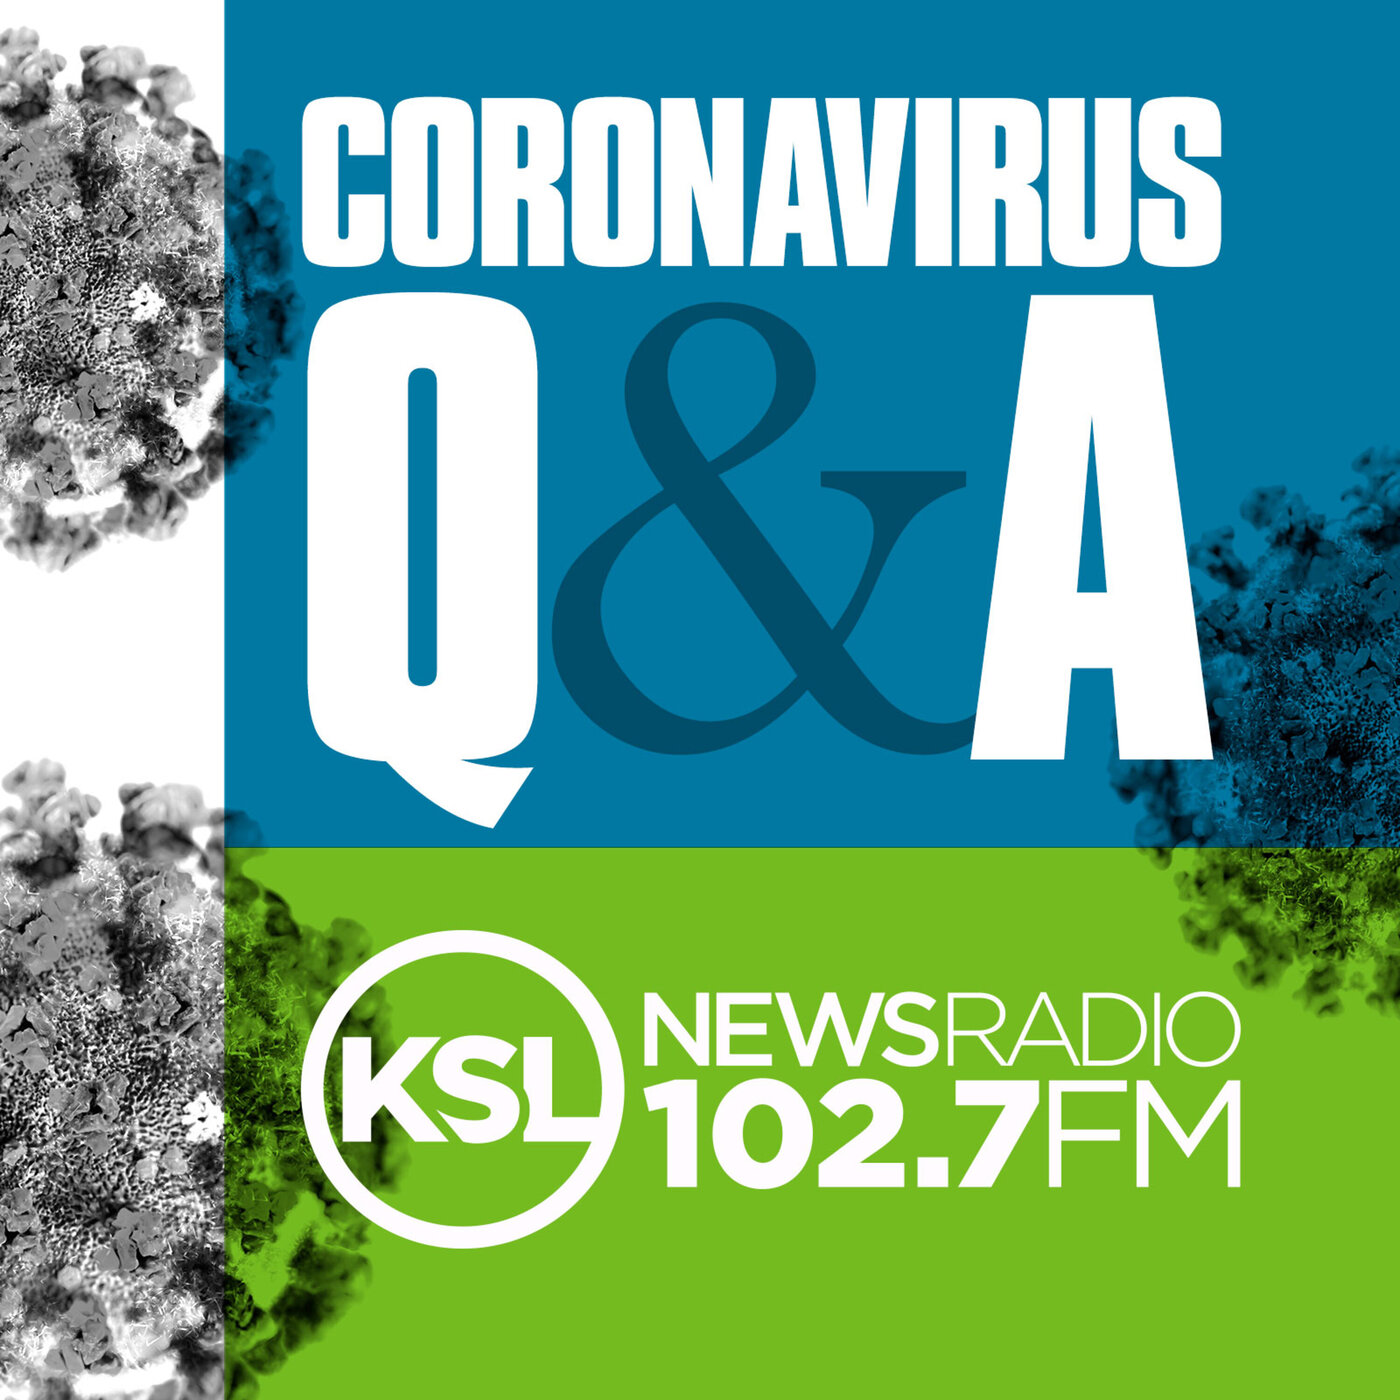 Coronavirus Update November 29th